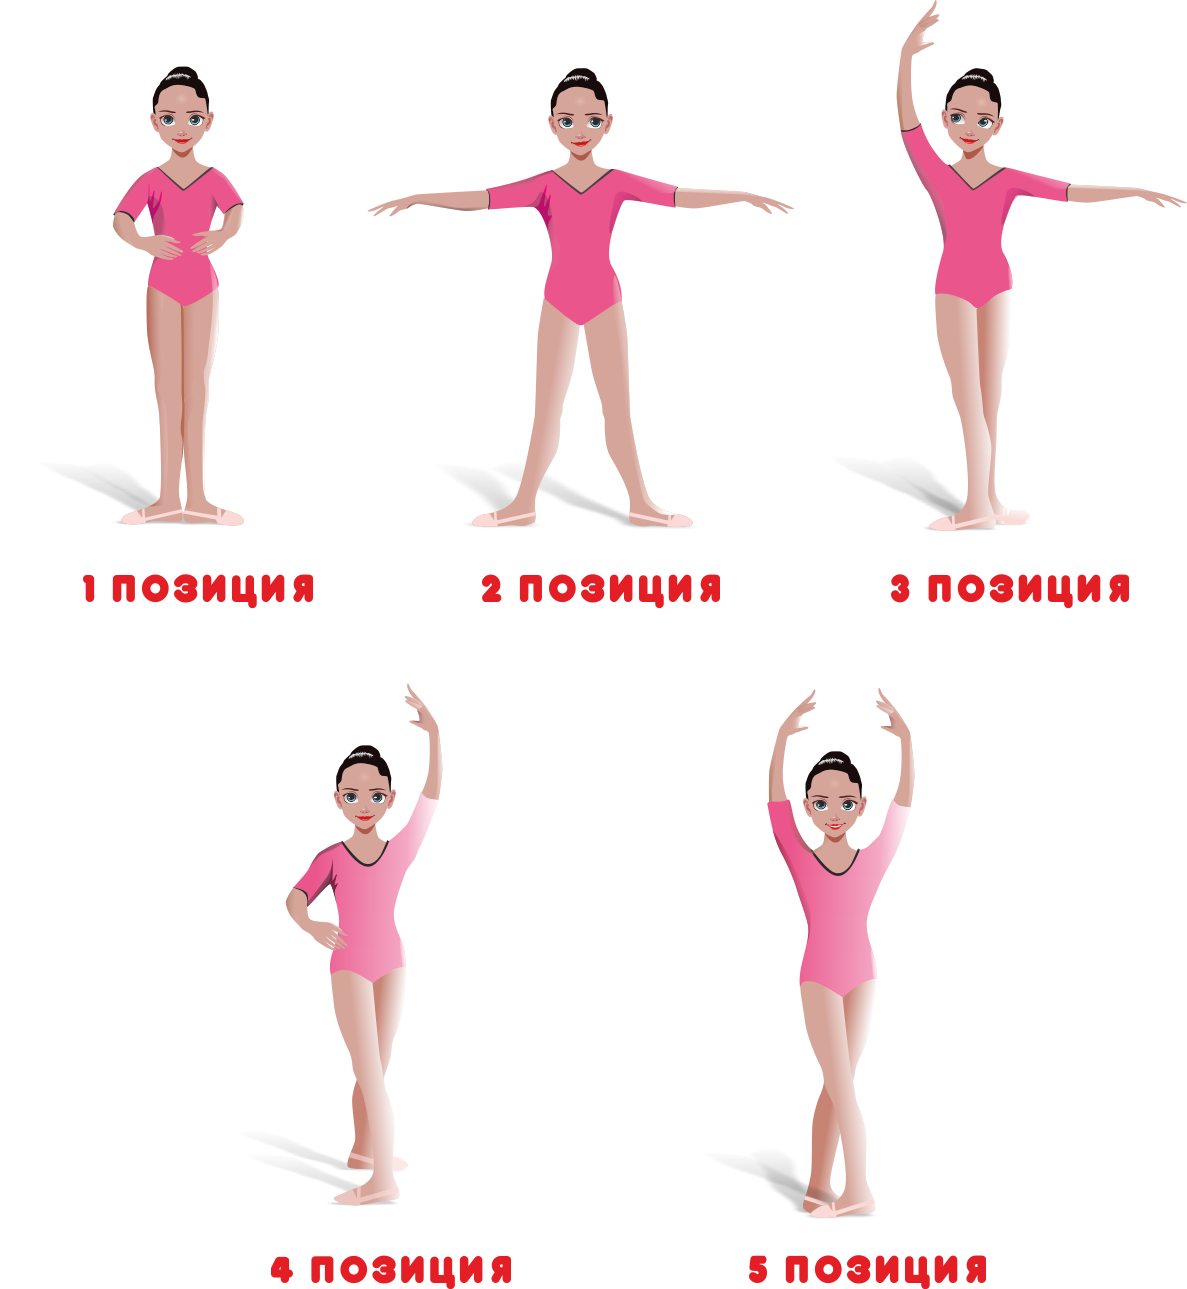 Сайт на первые позиции. Позиции рук в хореографии. Позиции ног в хореографии. Позиции рук и ног в хореографии. Позиции рук и ног в хореографии для детей.